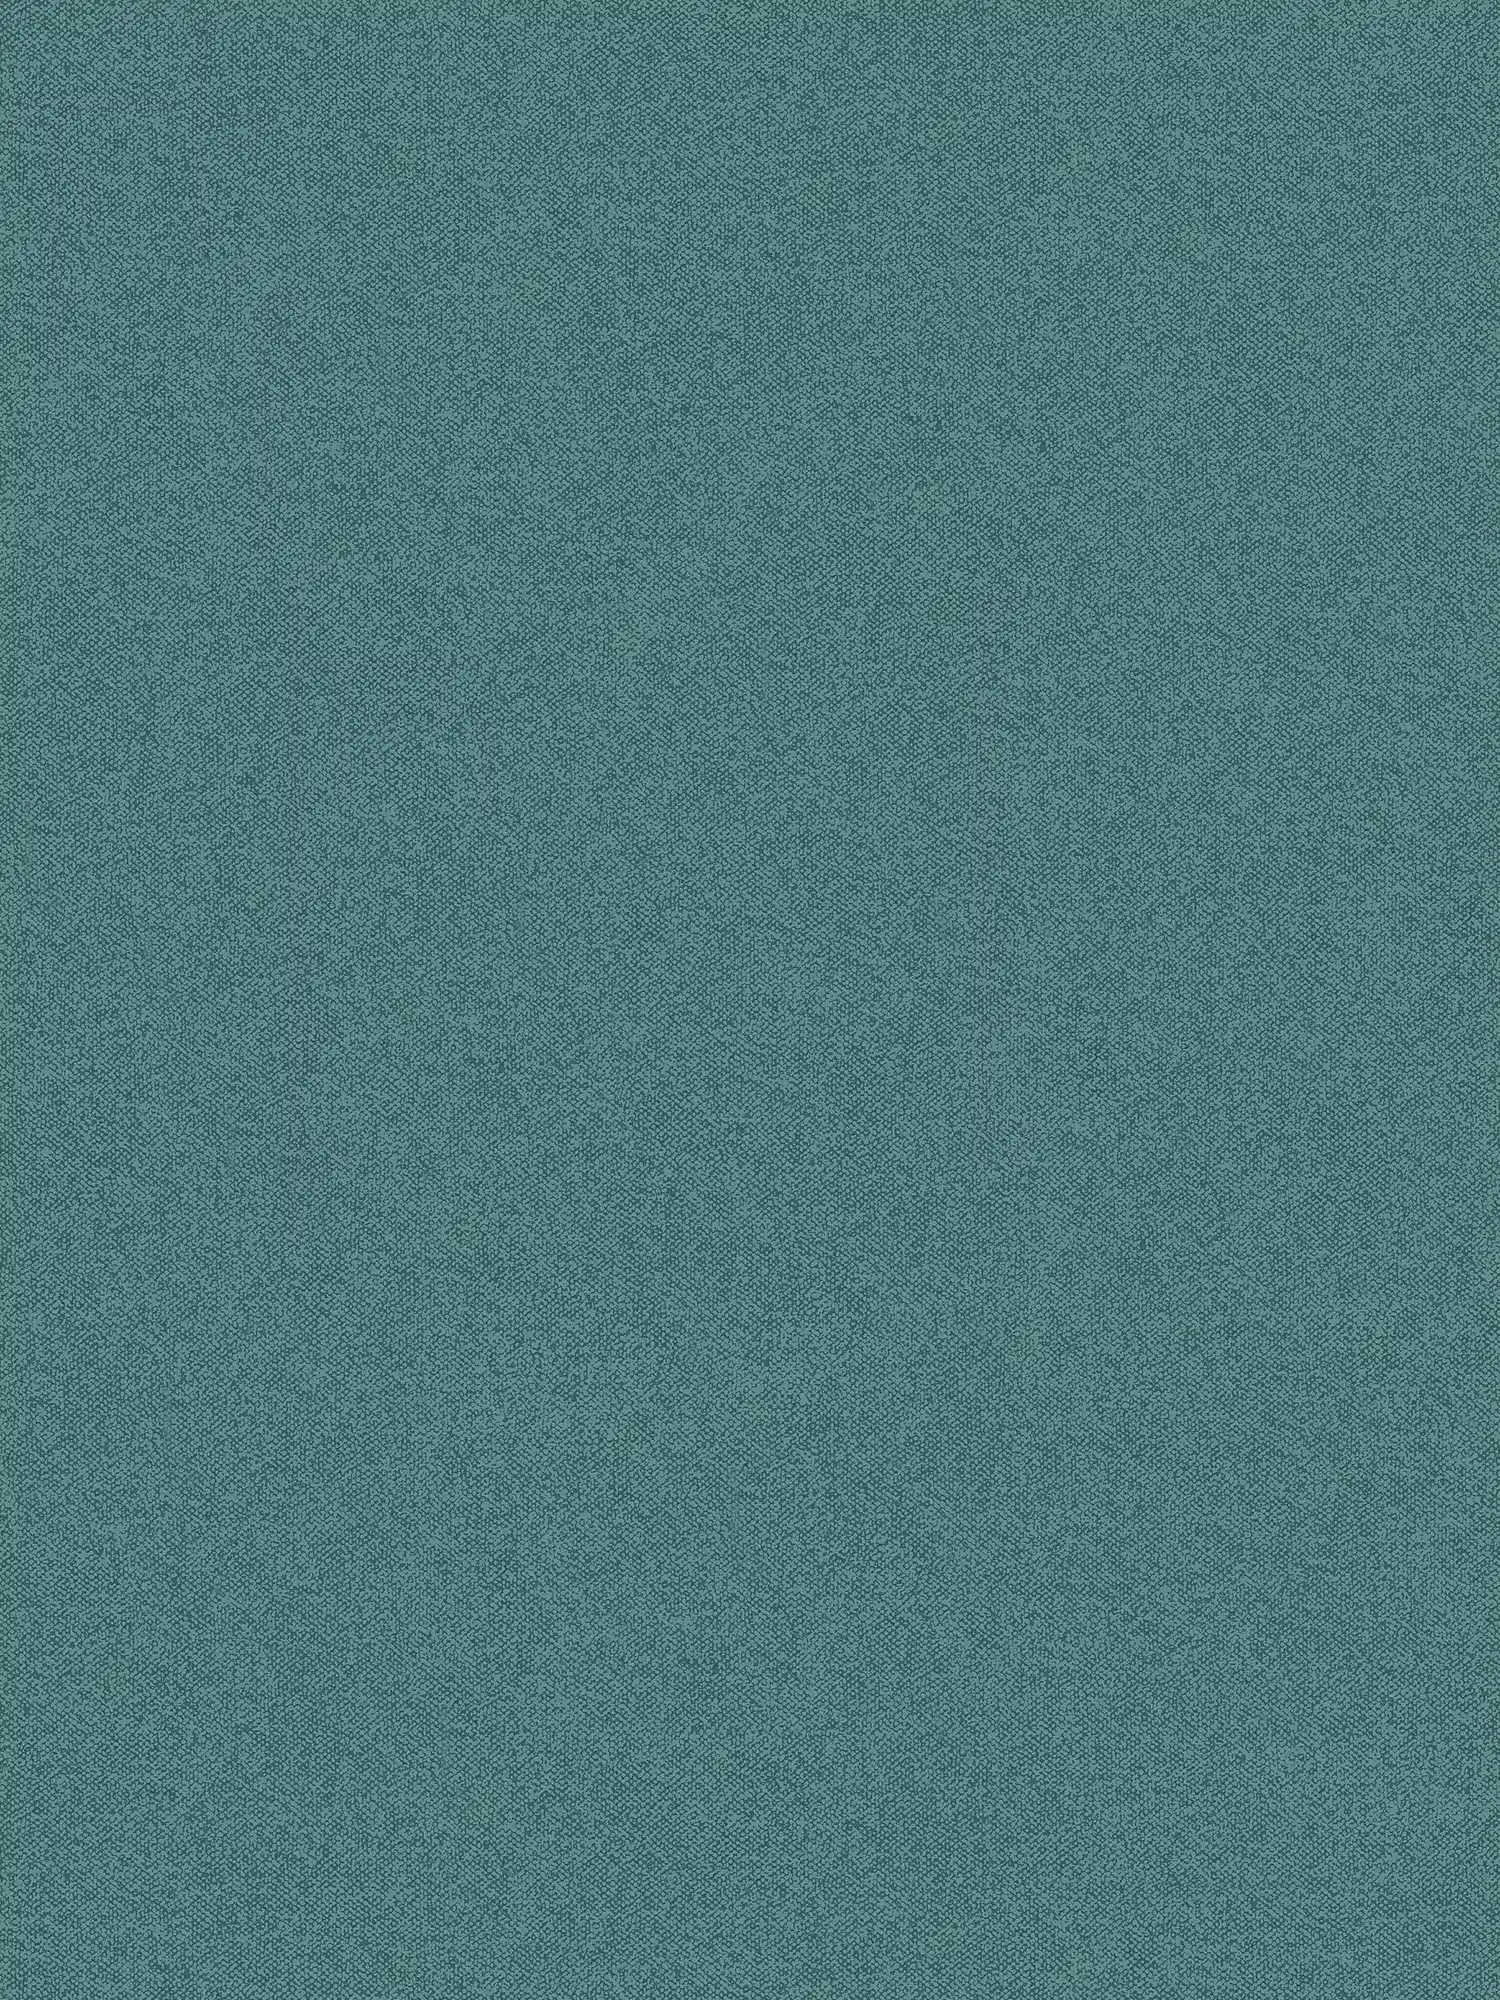 Plain wallpaper with linen look, textured - green, blue
